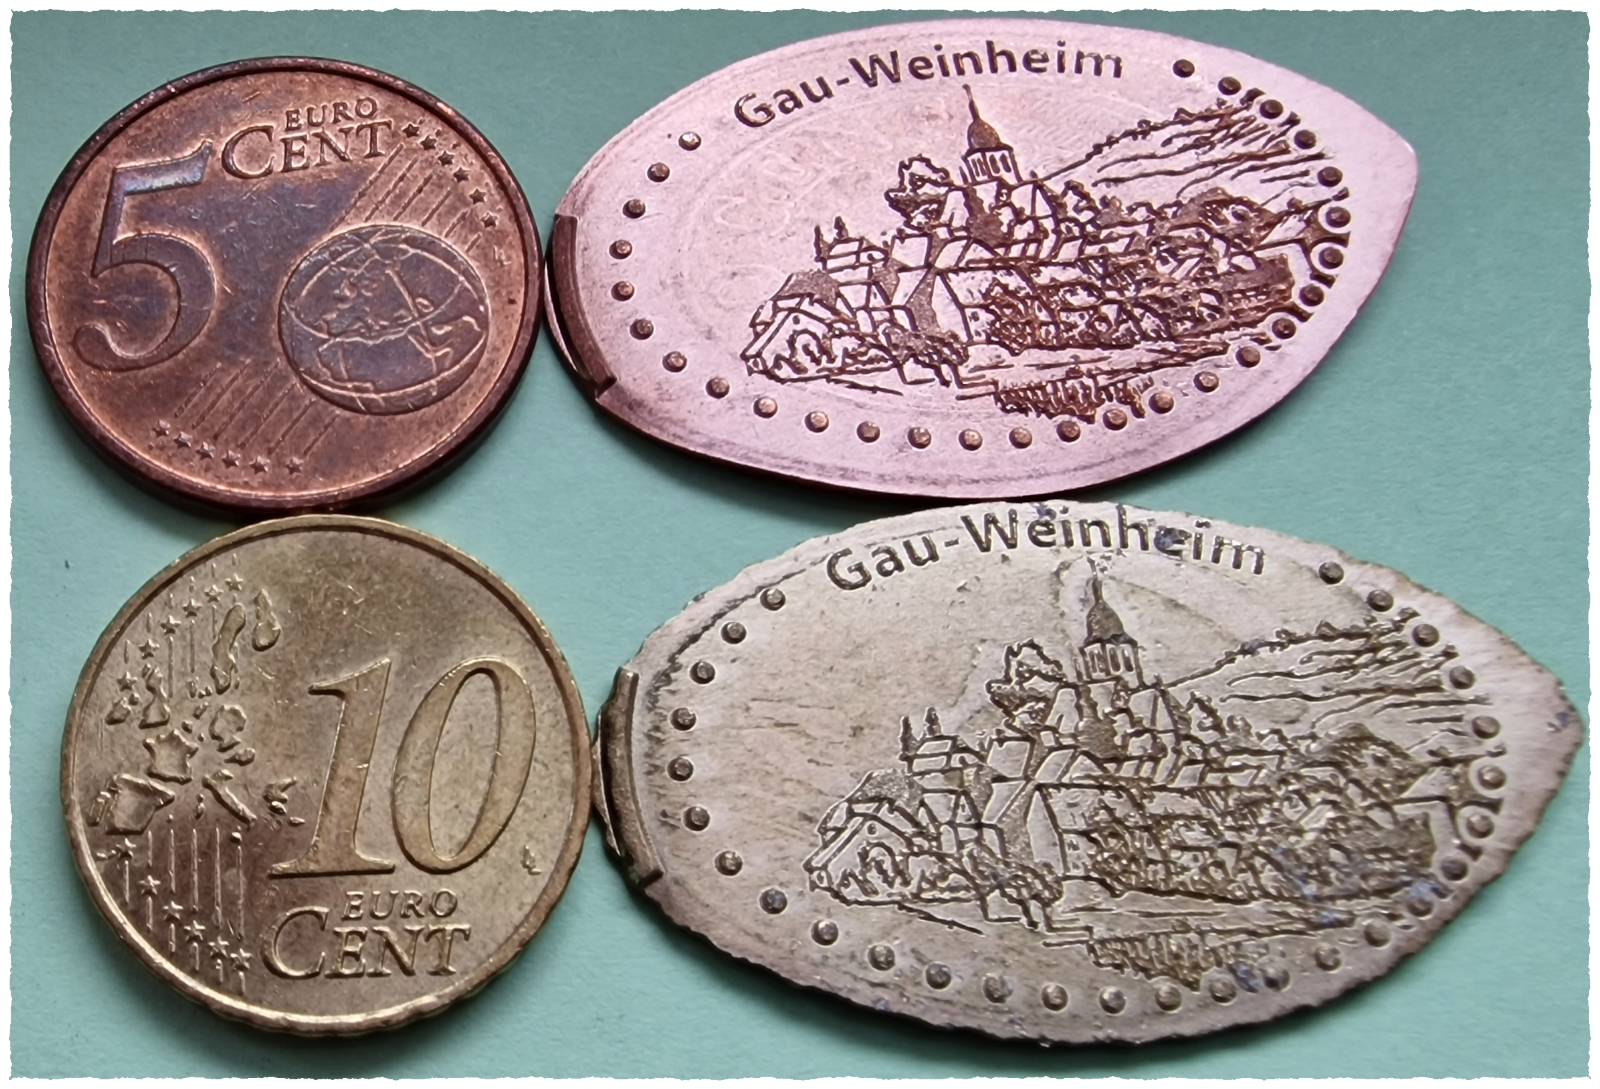 Münzen - Gau-Weinheim